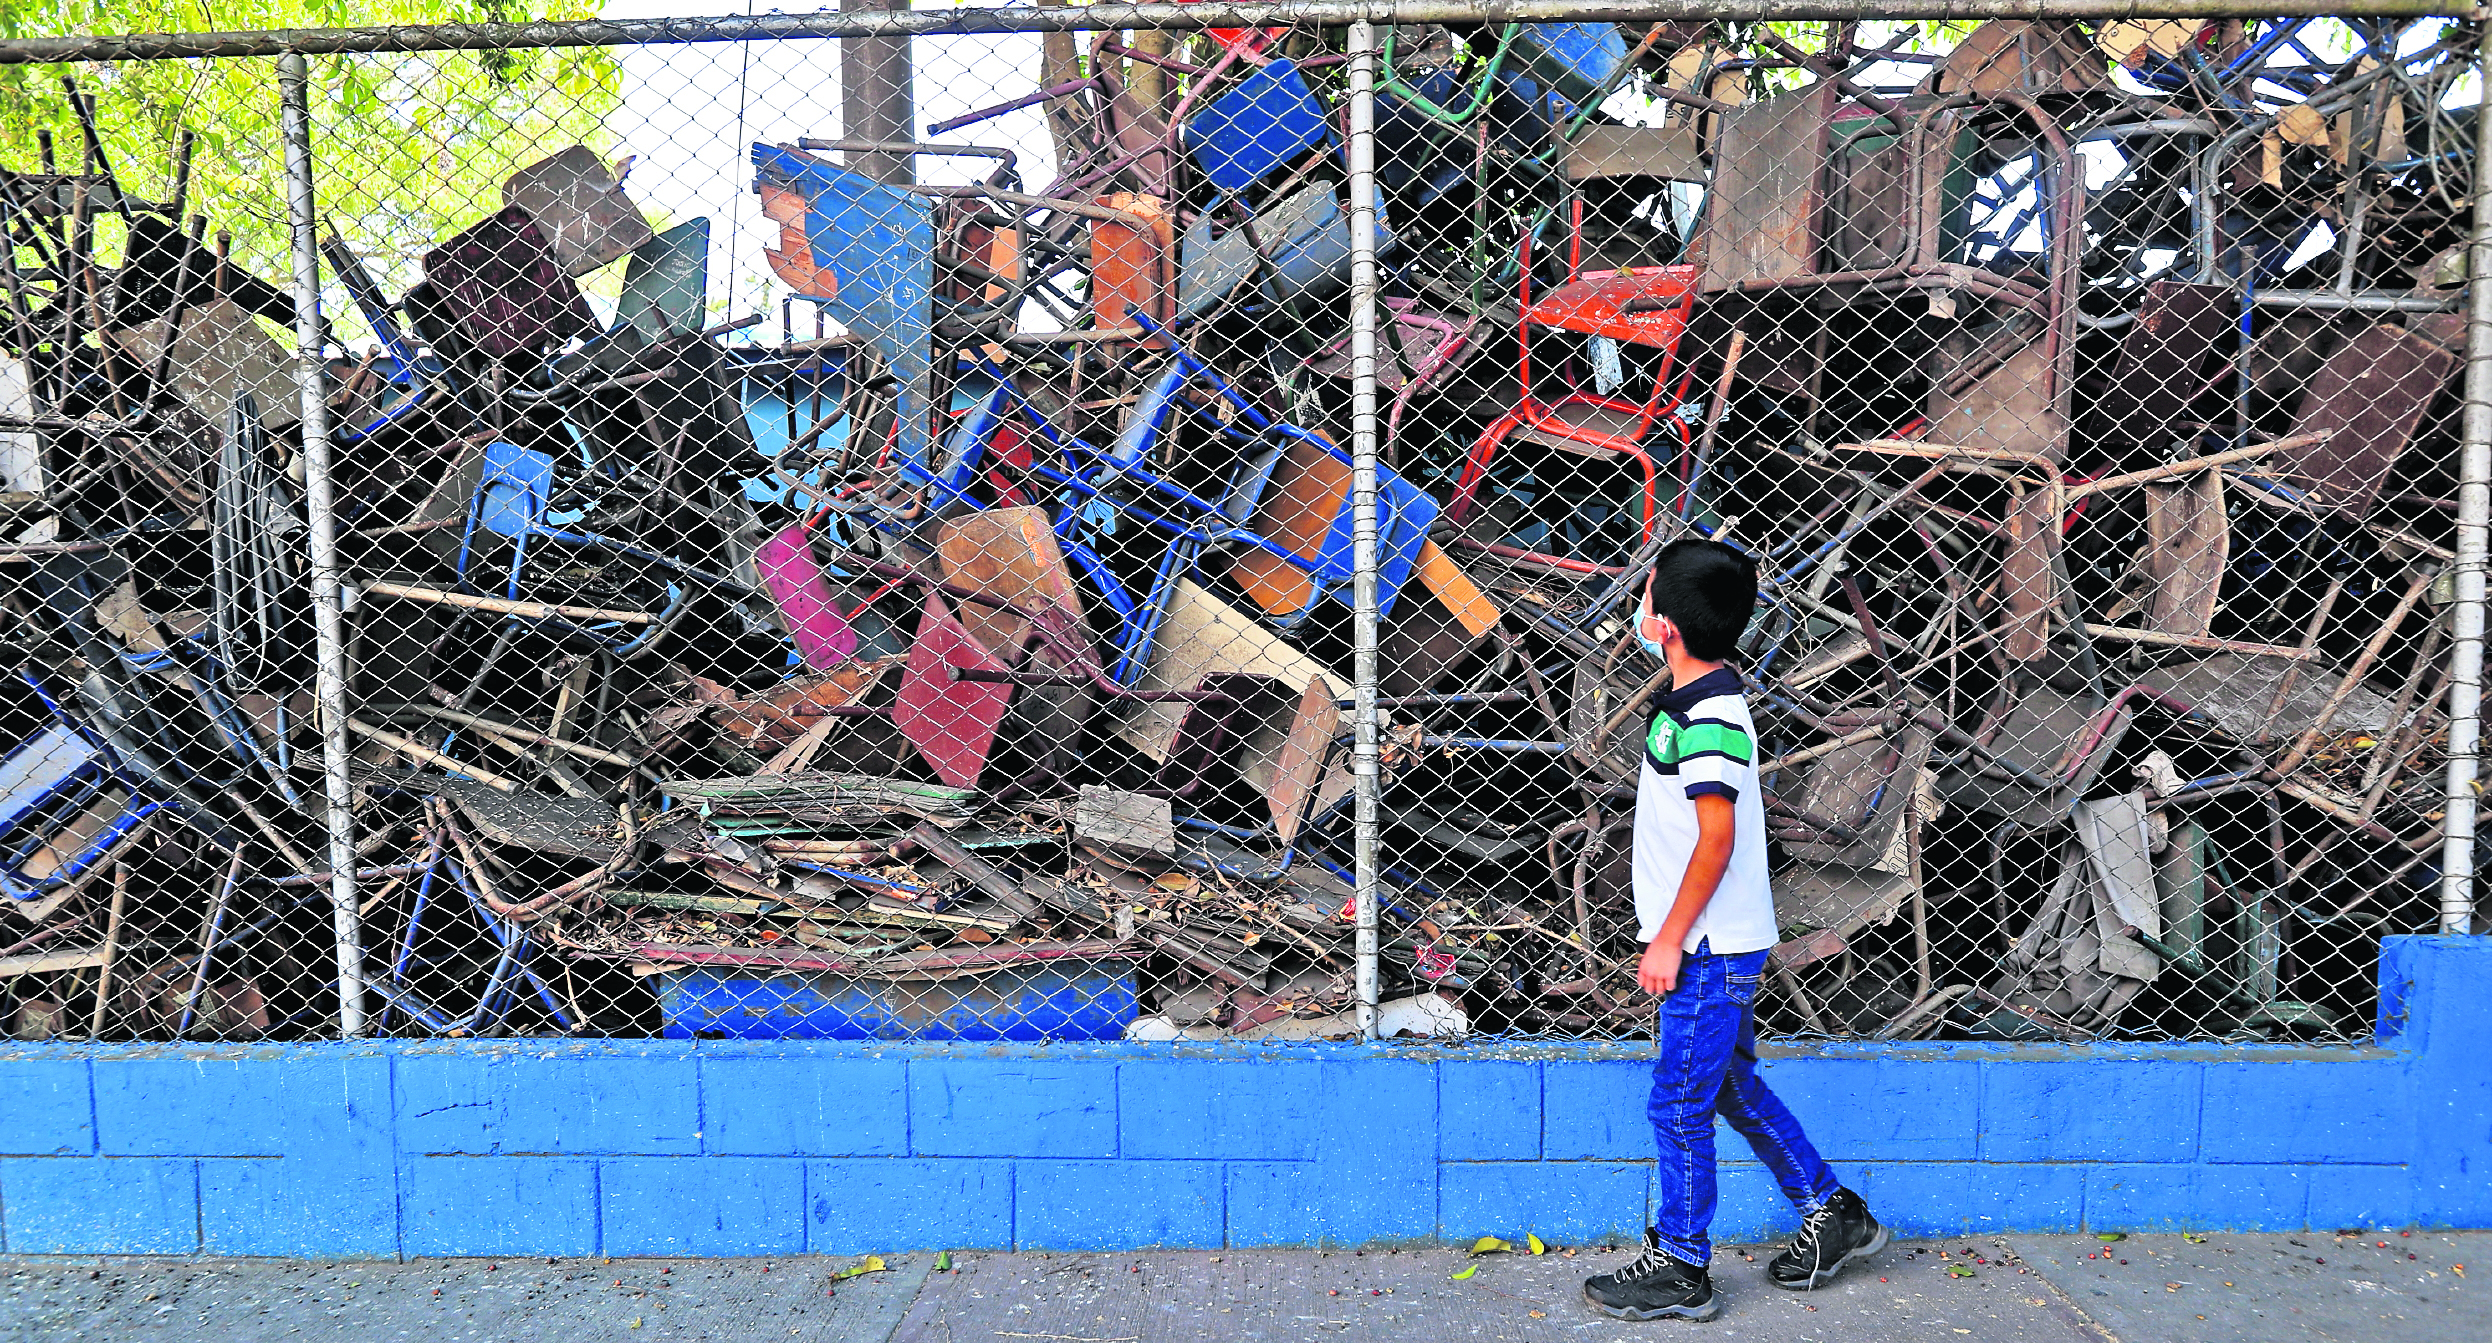 Los escritorios deteriorados permanecen amontonados en rincones de las escuelas. (Foto Prensa Libre: Hemeroteca PL)